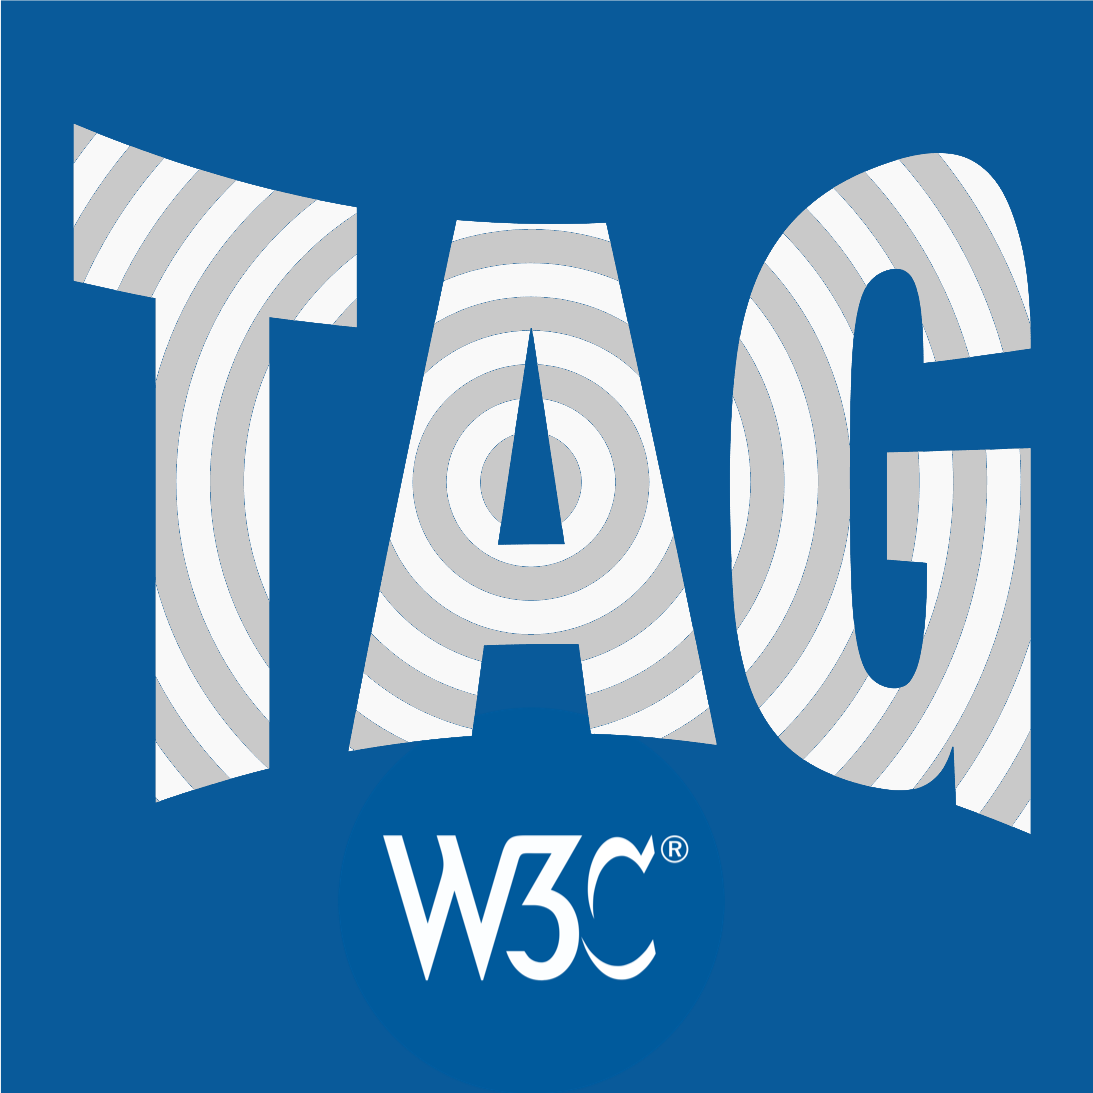 W3C TAG logo